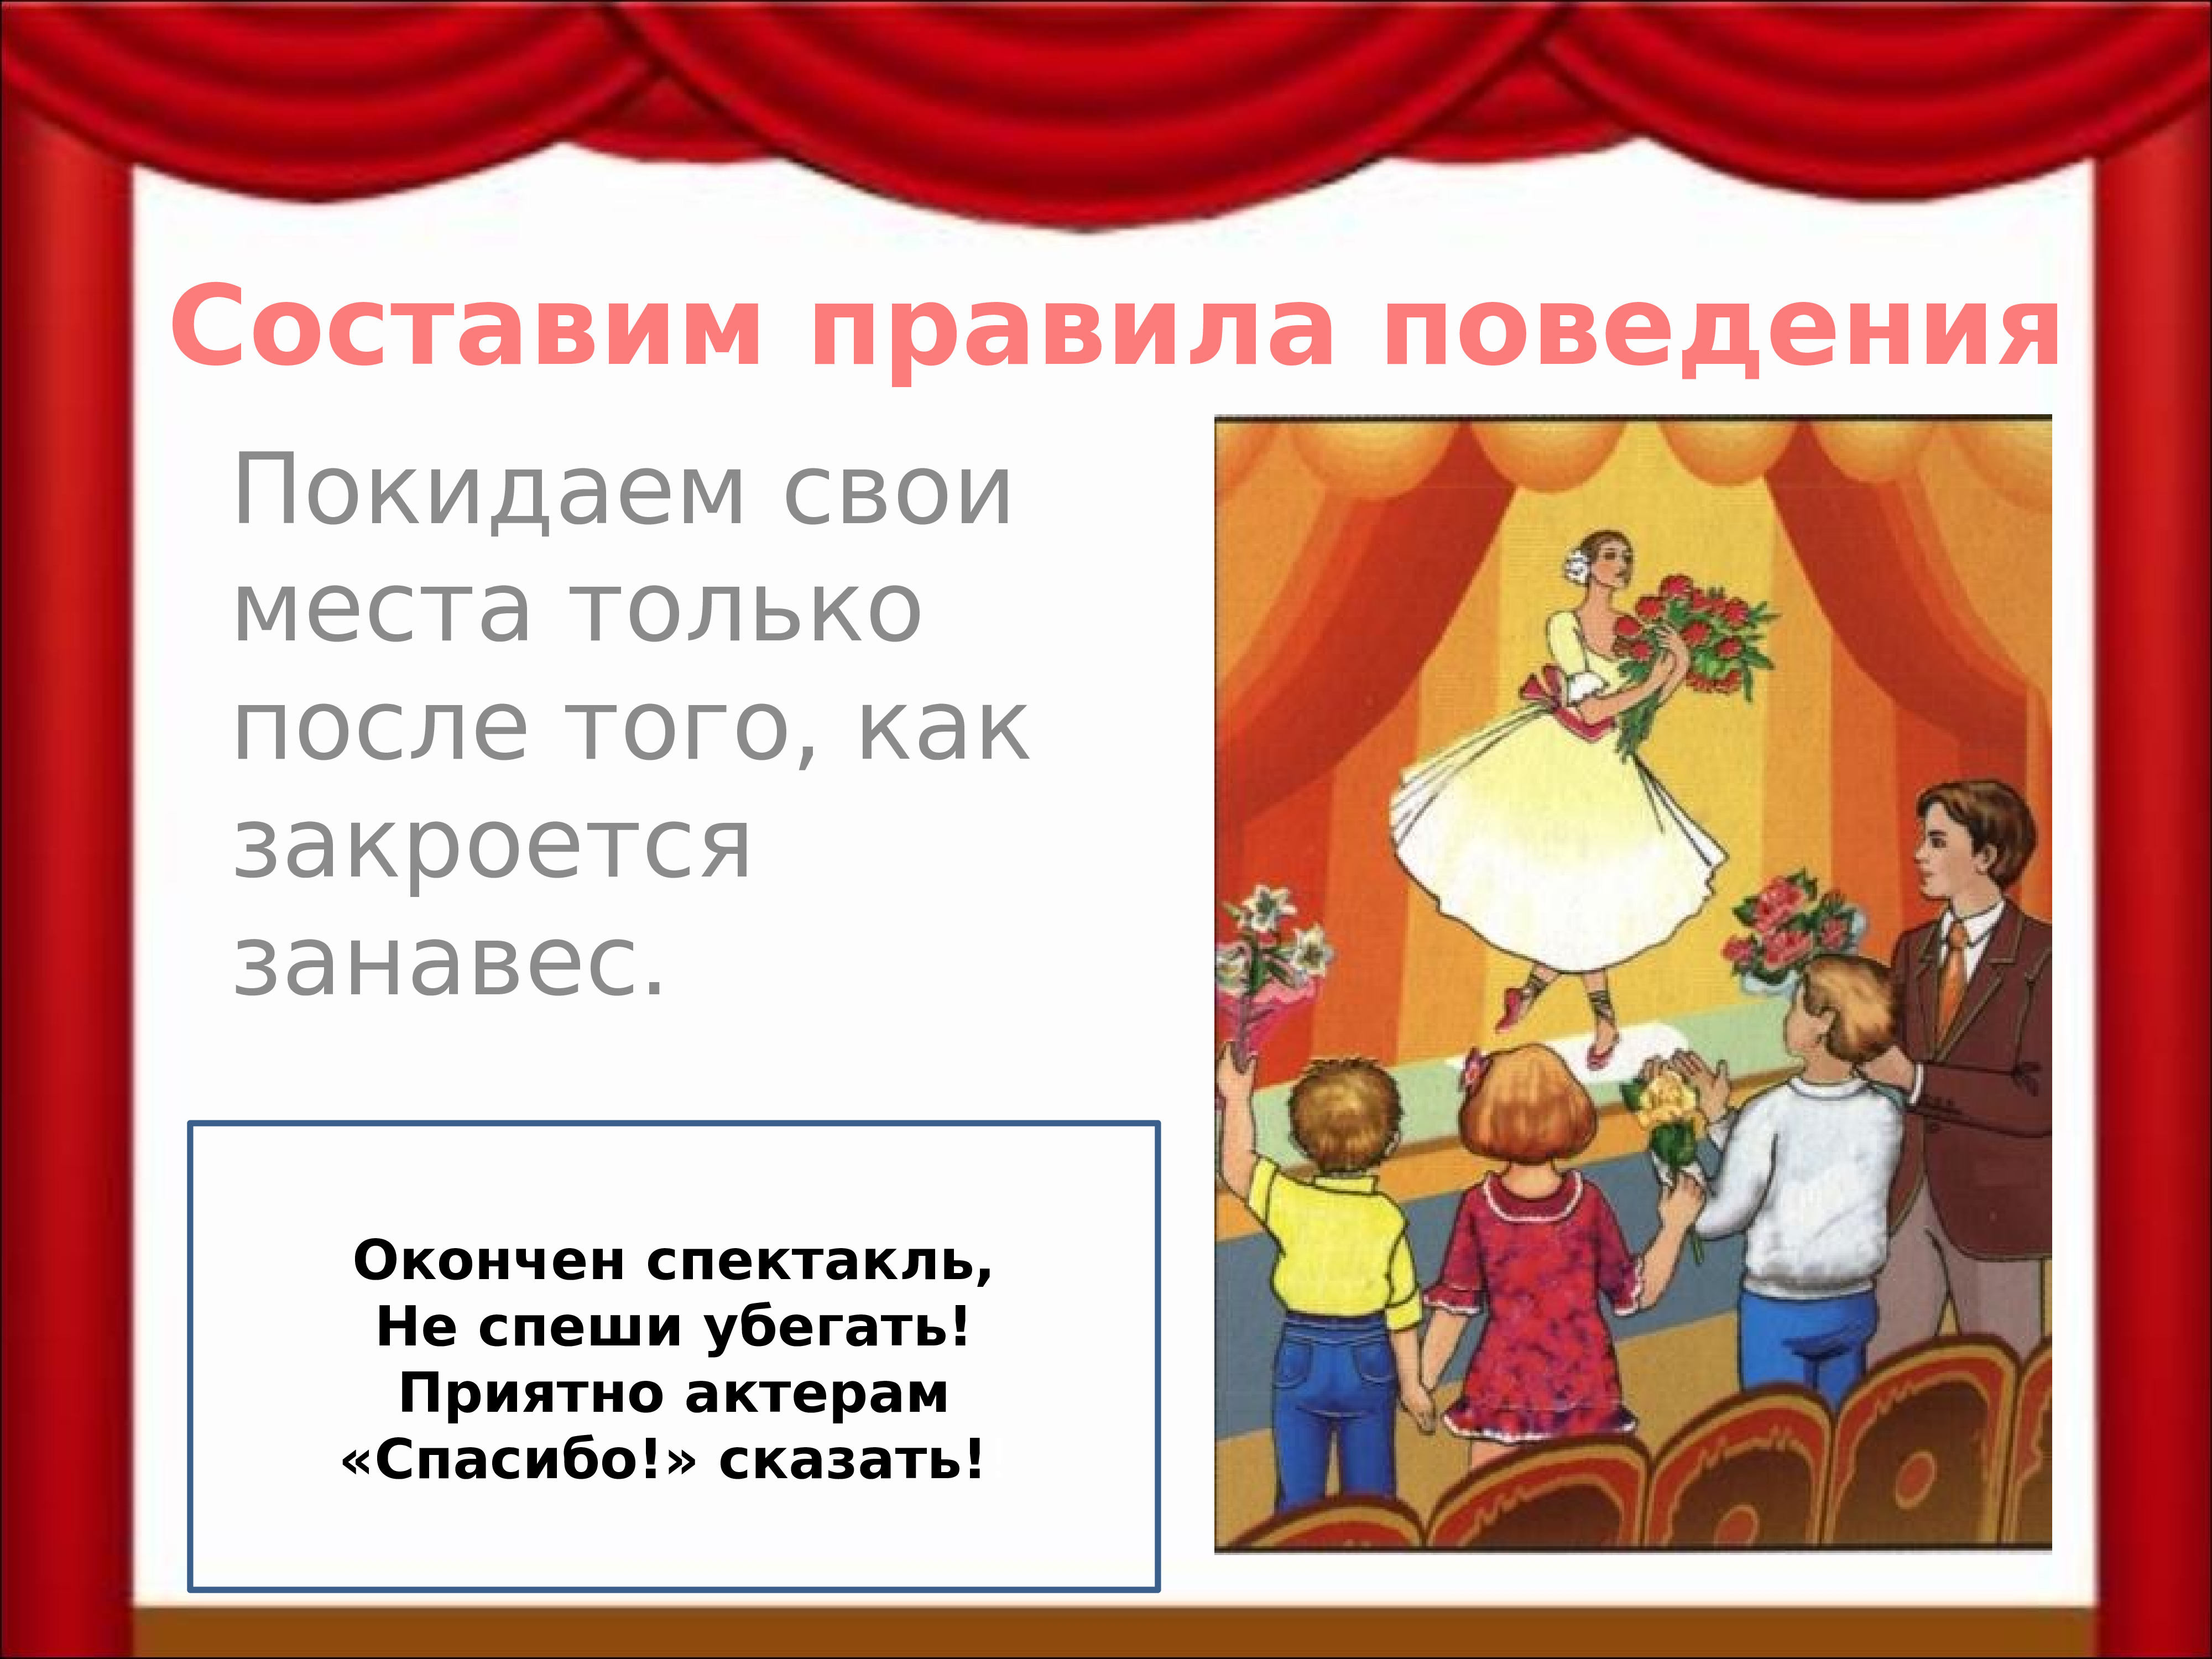 Презентация Знакомство С Театром